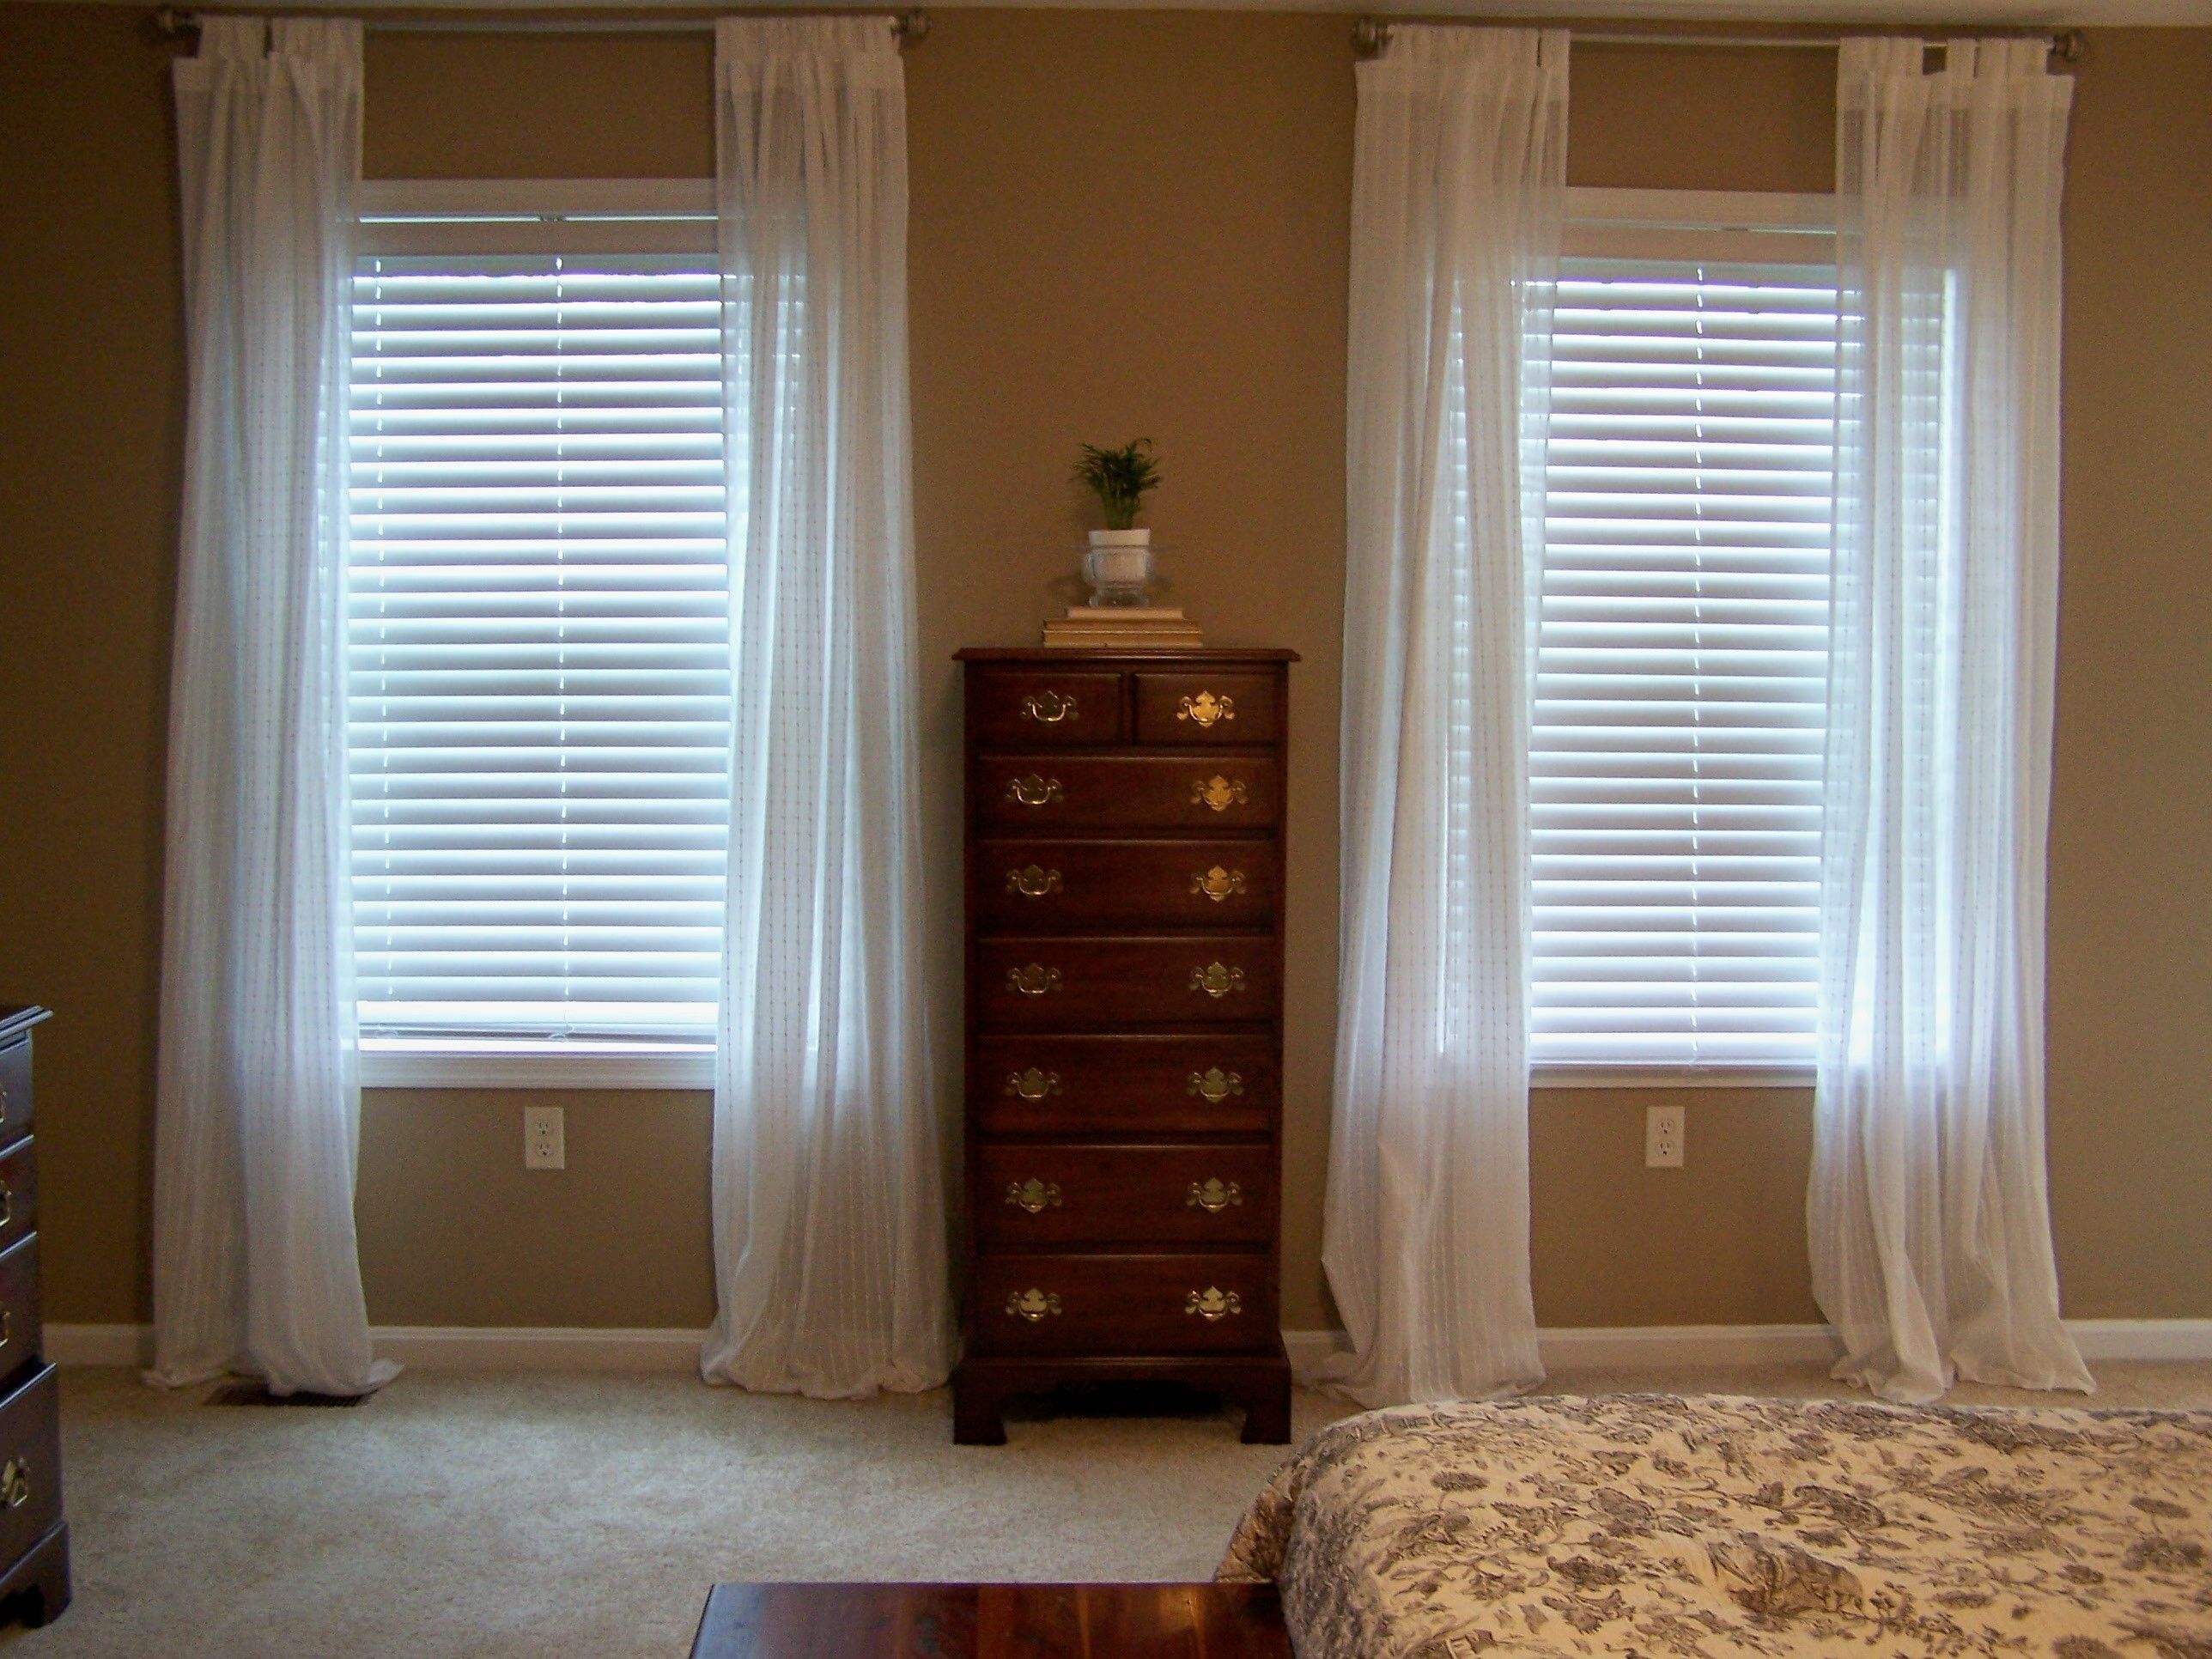 Sheer Curtains Bedroom Pierpointsprings Regarding Long Bedroom Curtains (View 25 of 25)